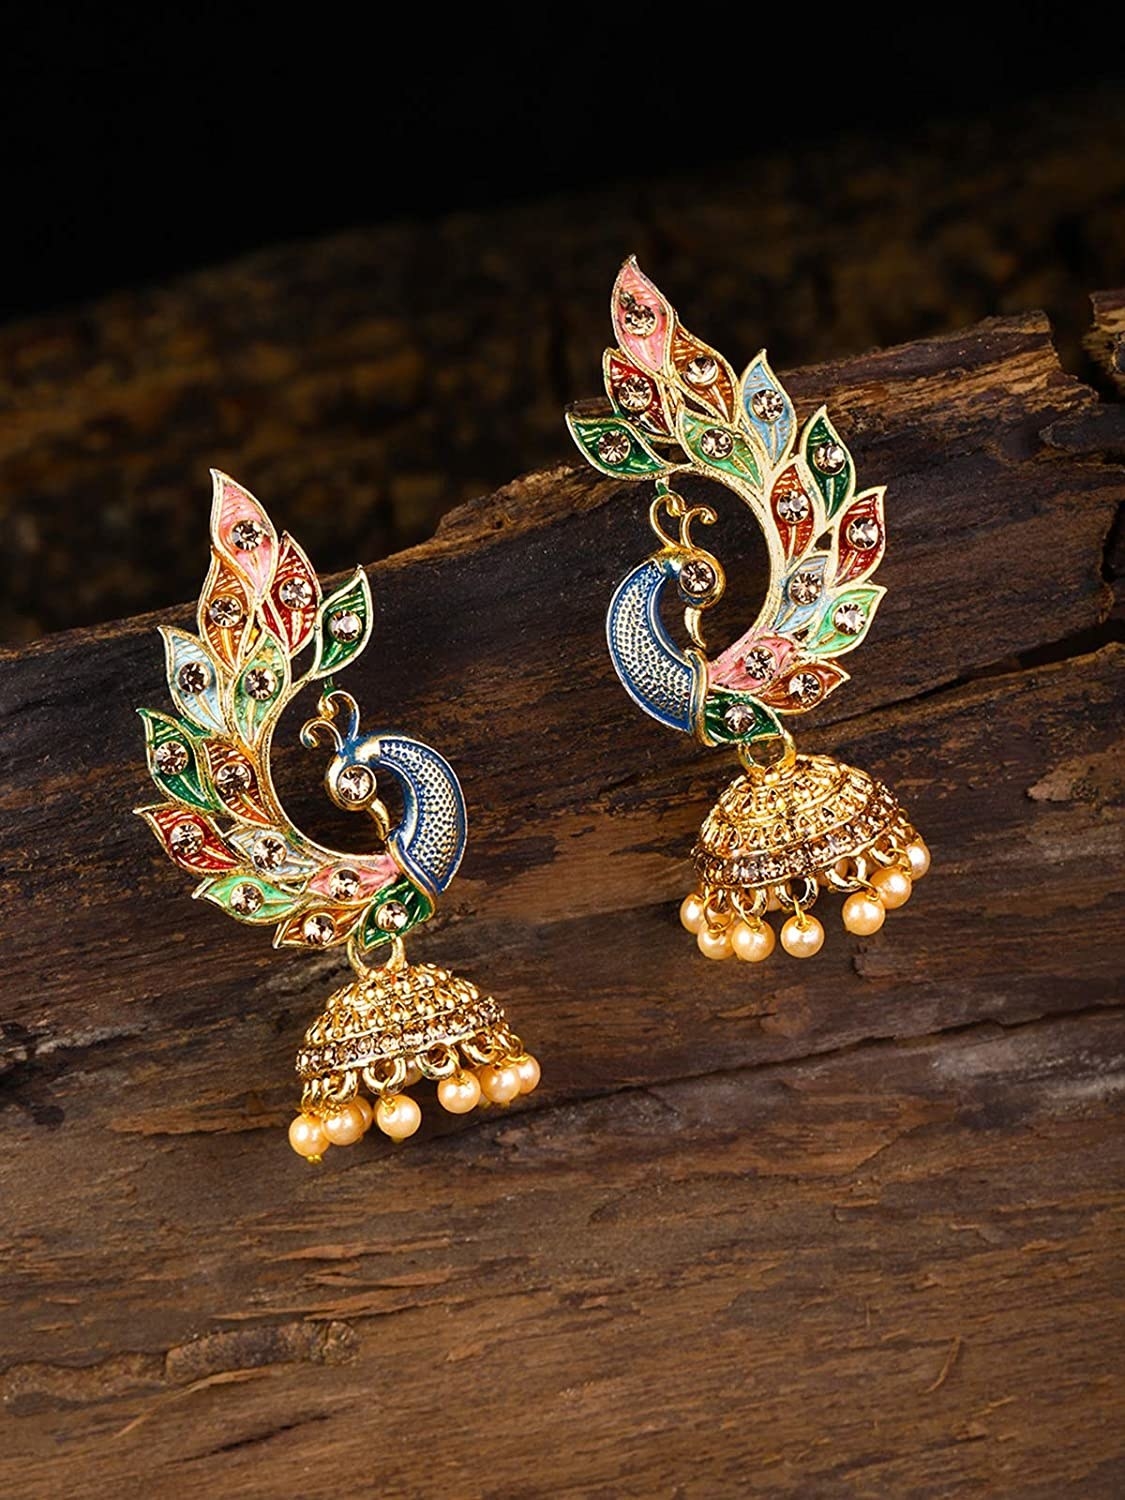 A pair of peacock earrings